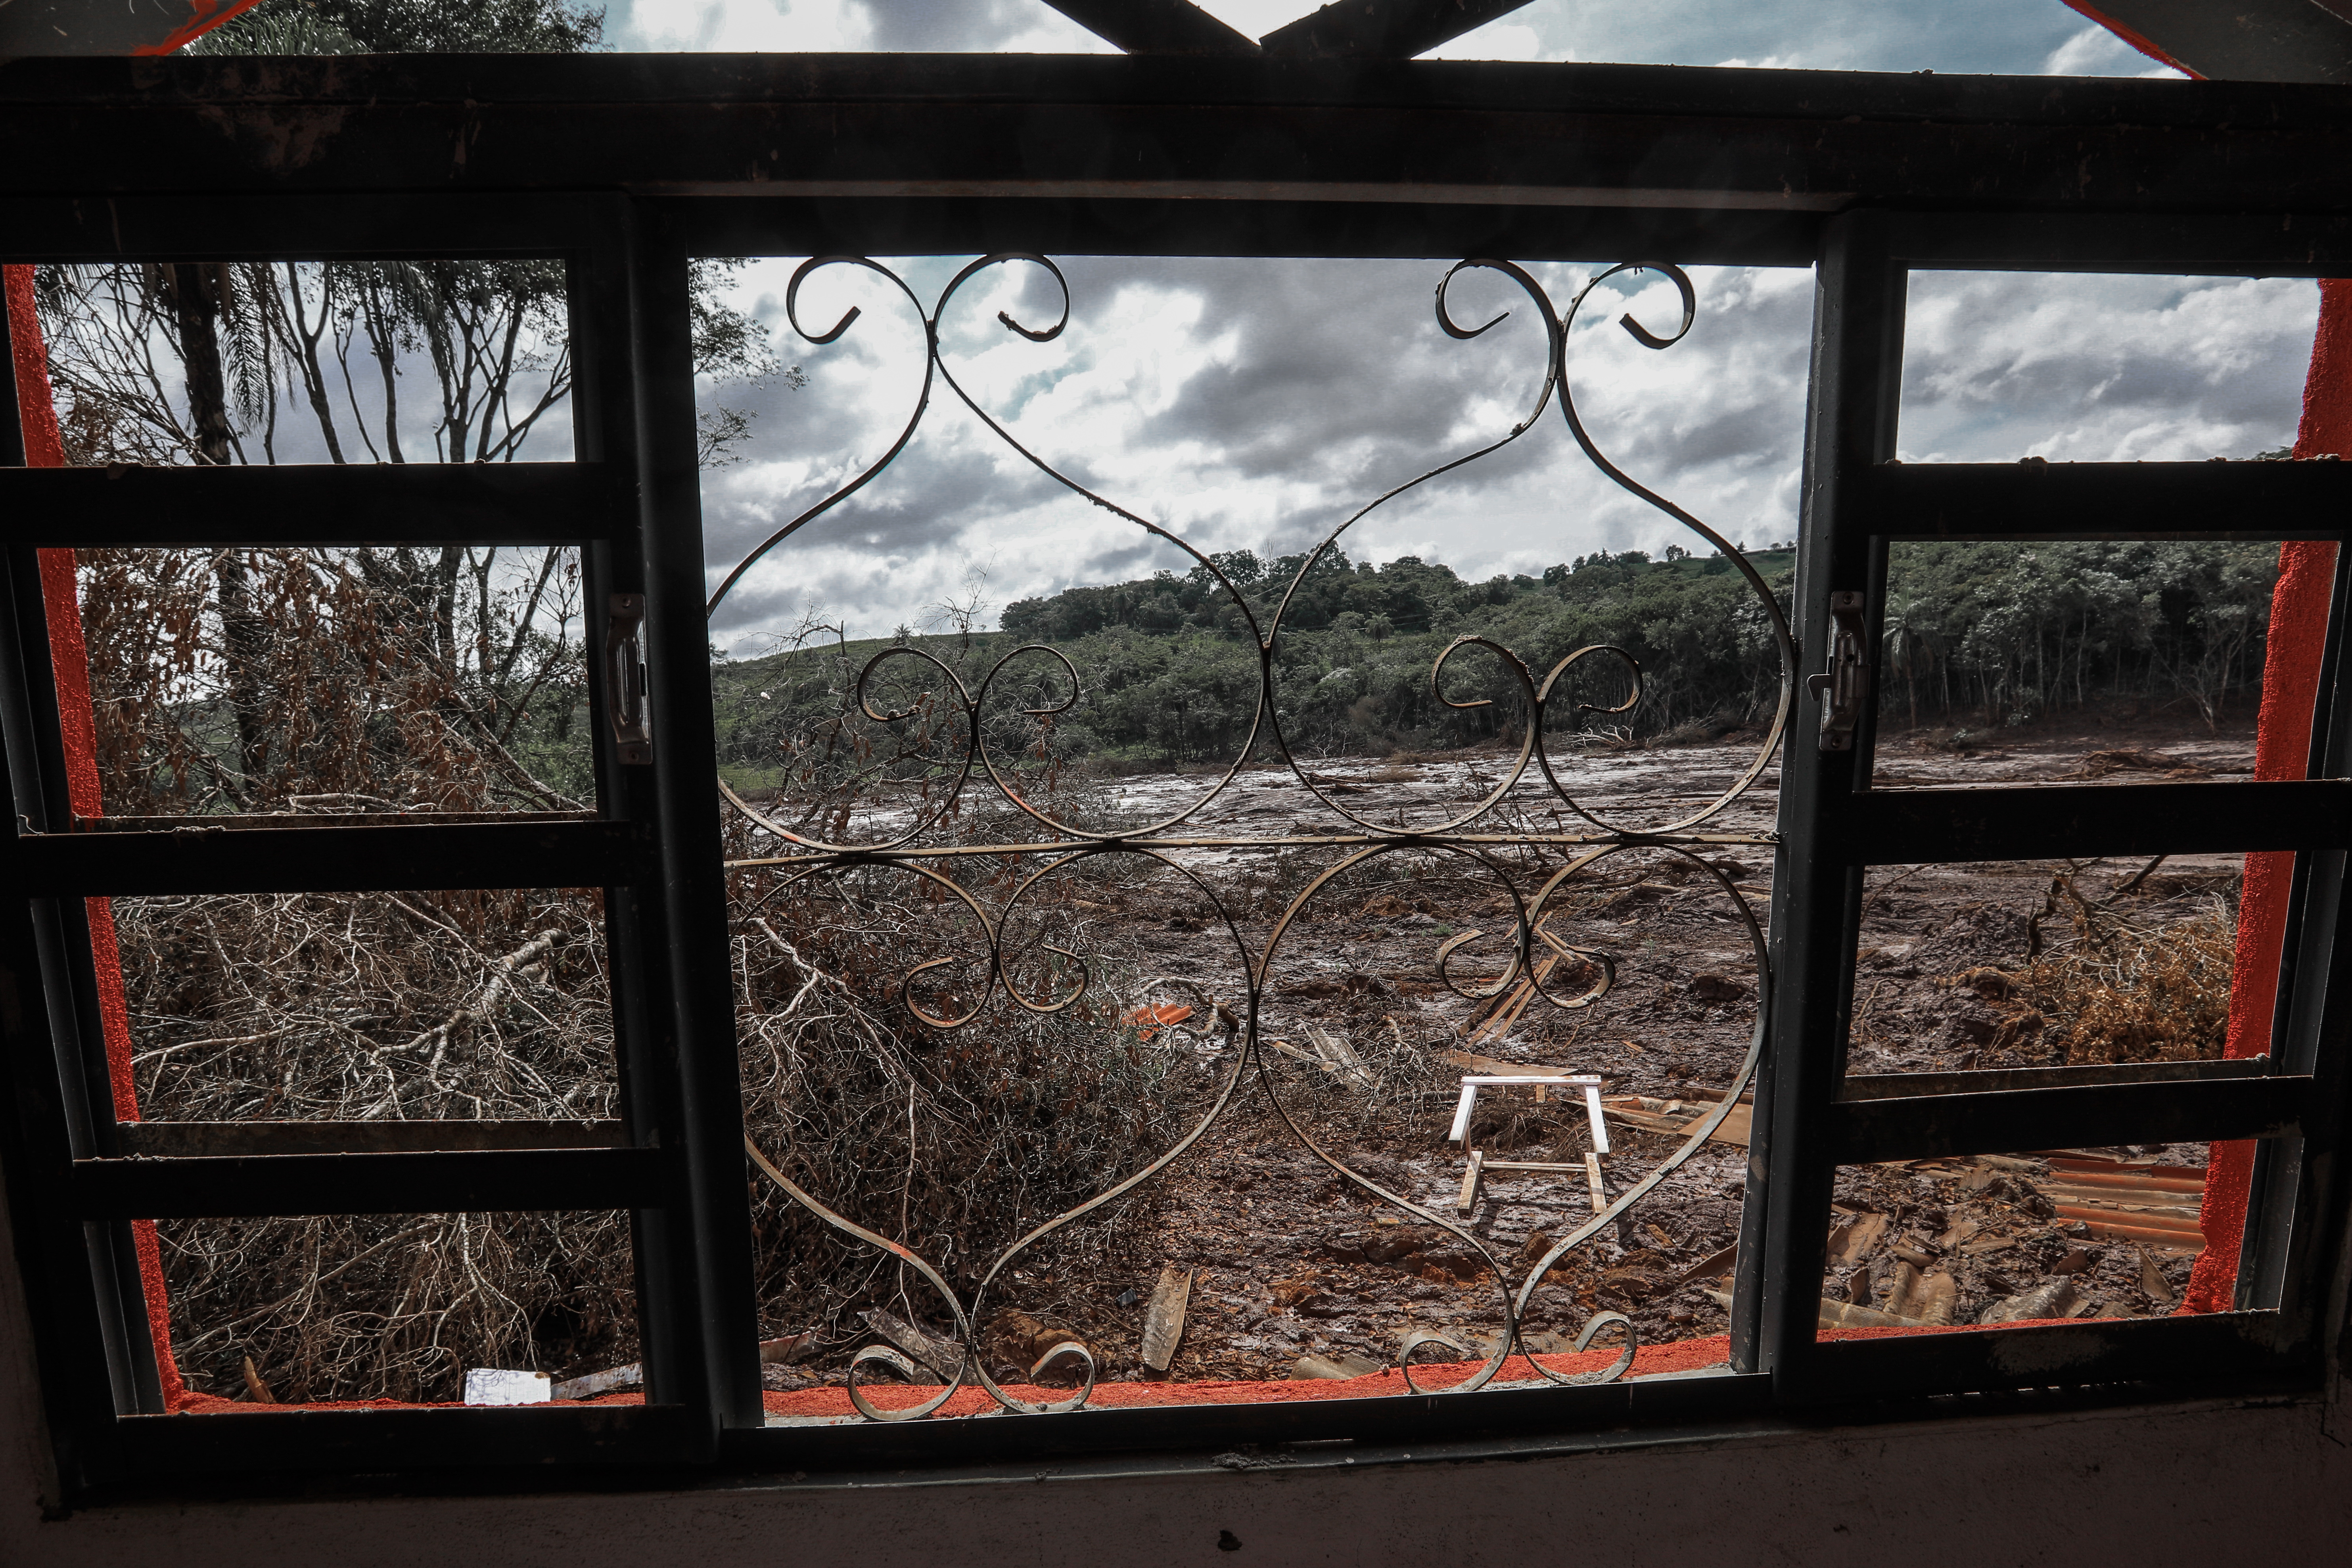 Visão do ambiente devastado pela tragédia em Brumadinho, através de uma janela.